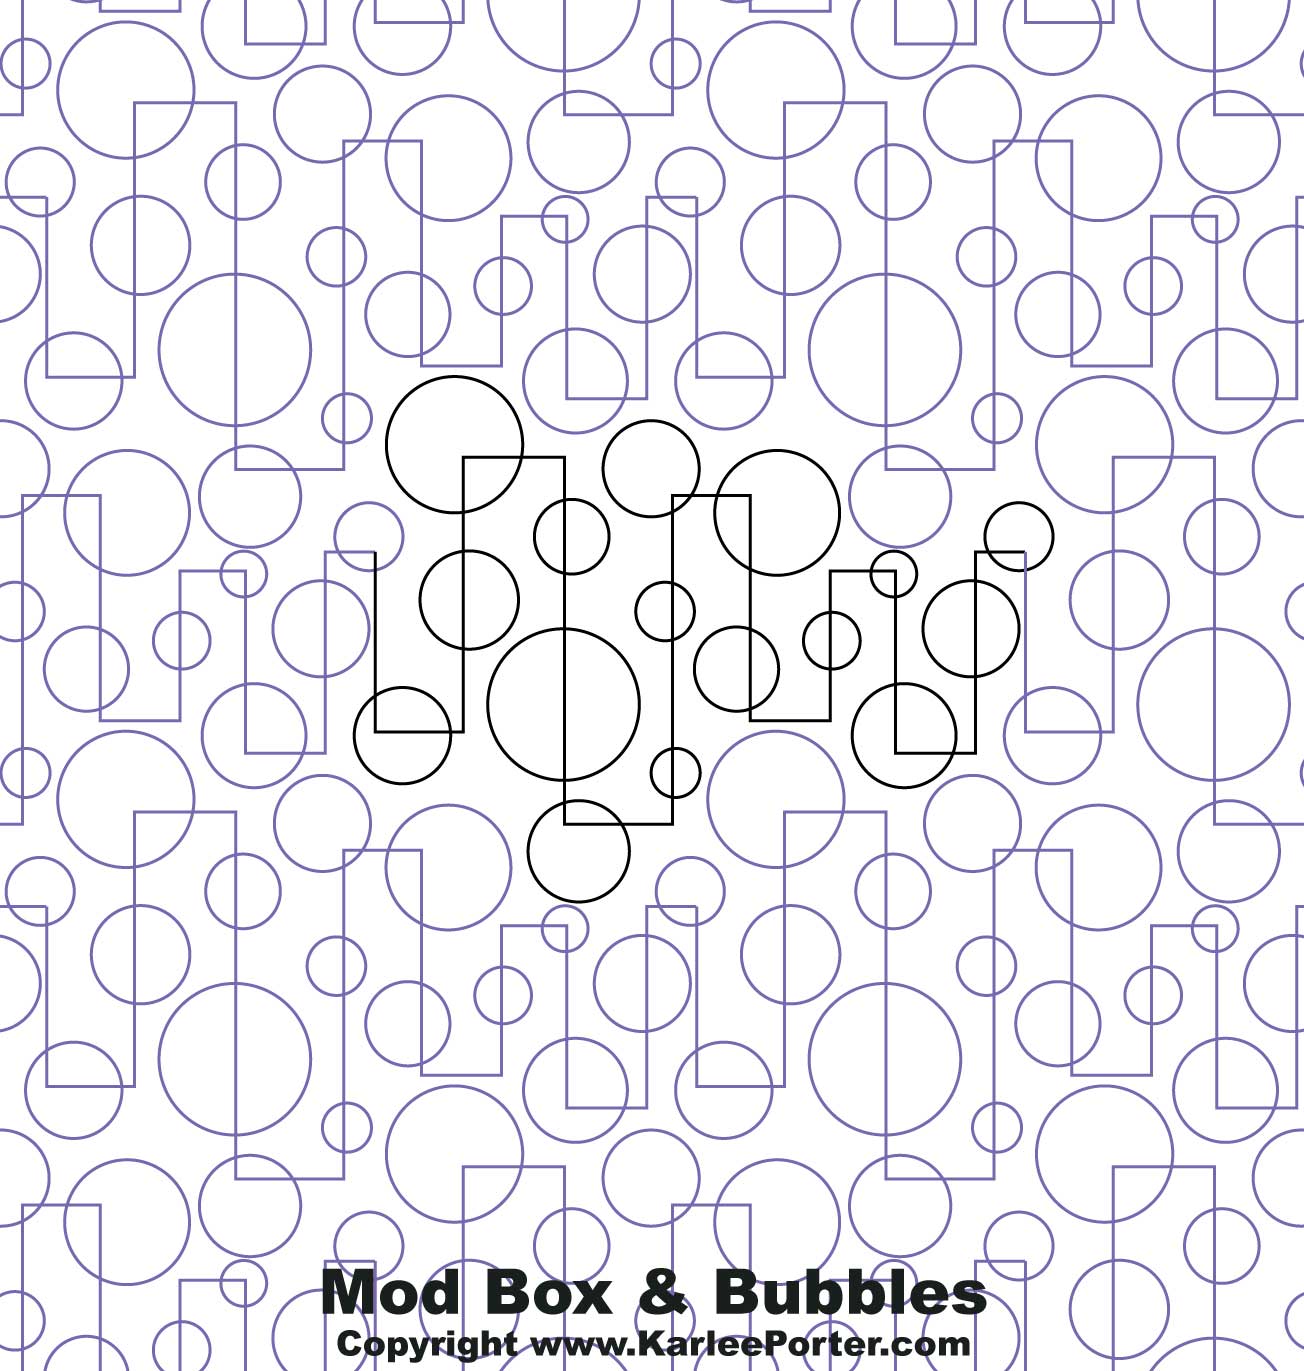 Mod Box & Bubbles & Bars